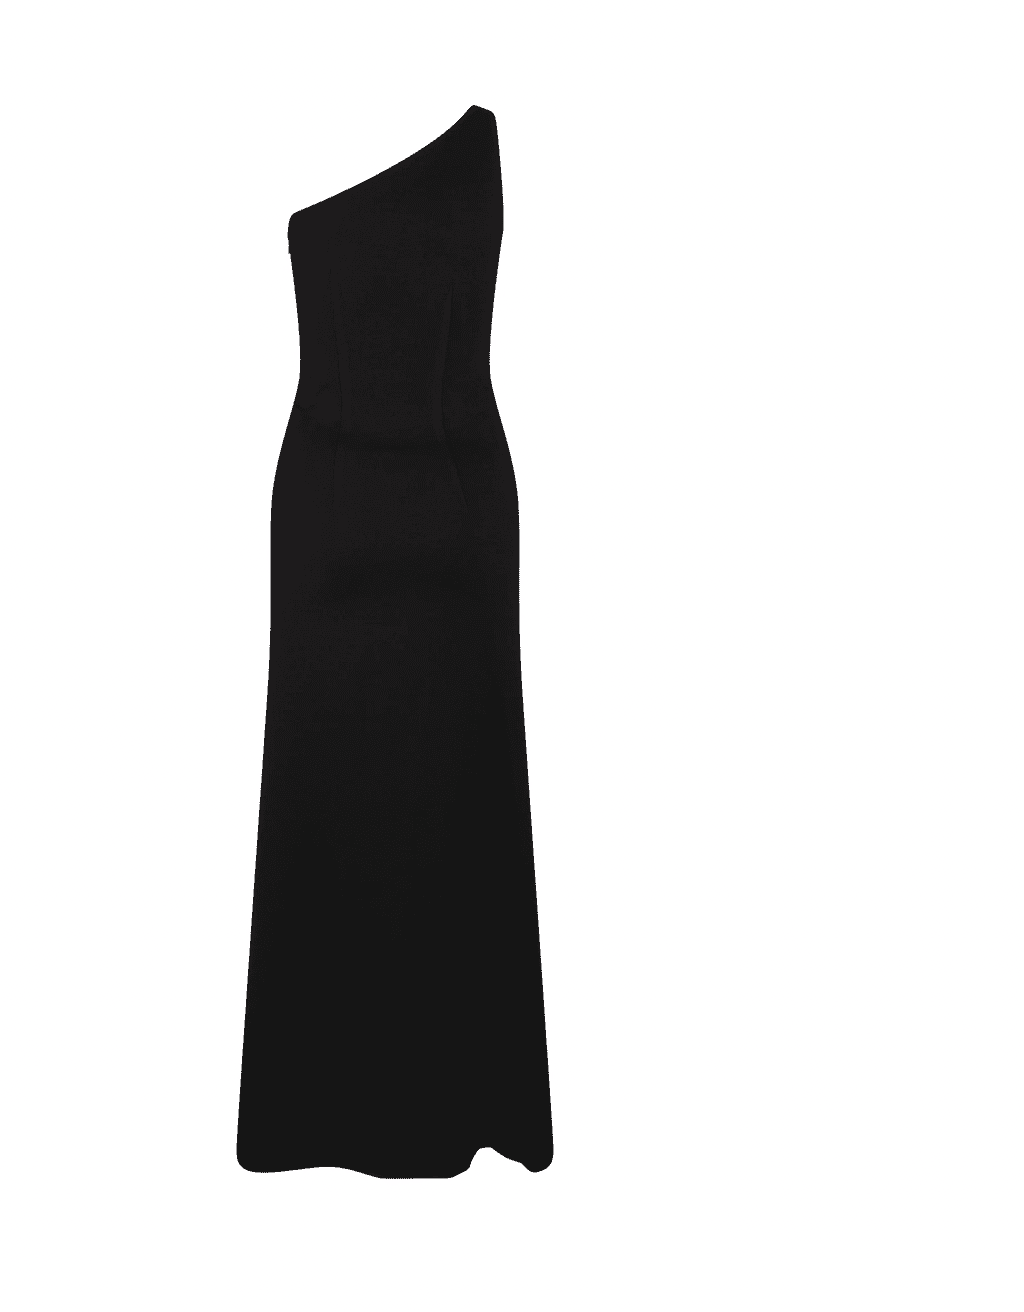 Black one shoulder midi dress for rent.